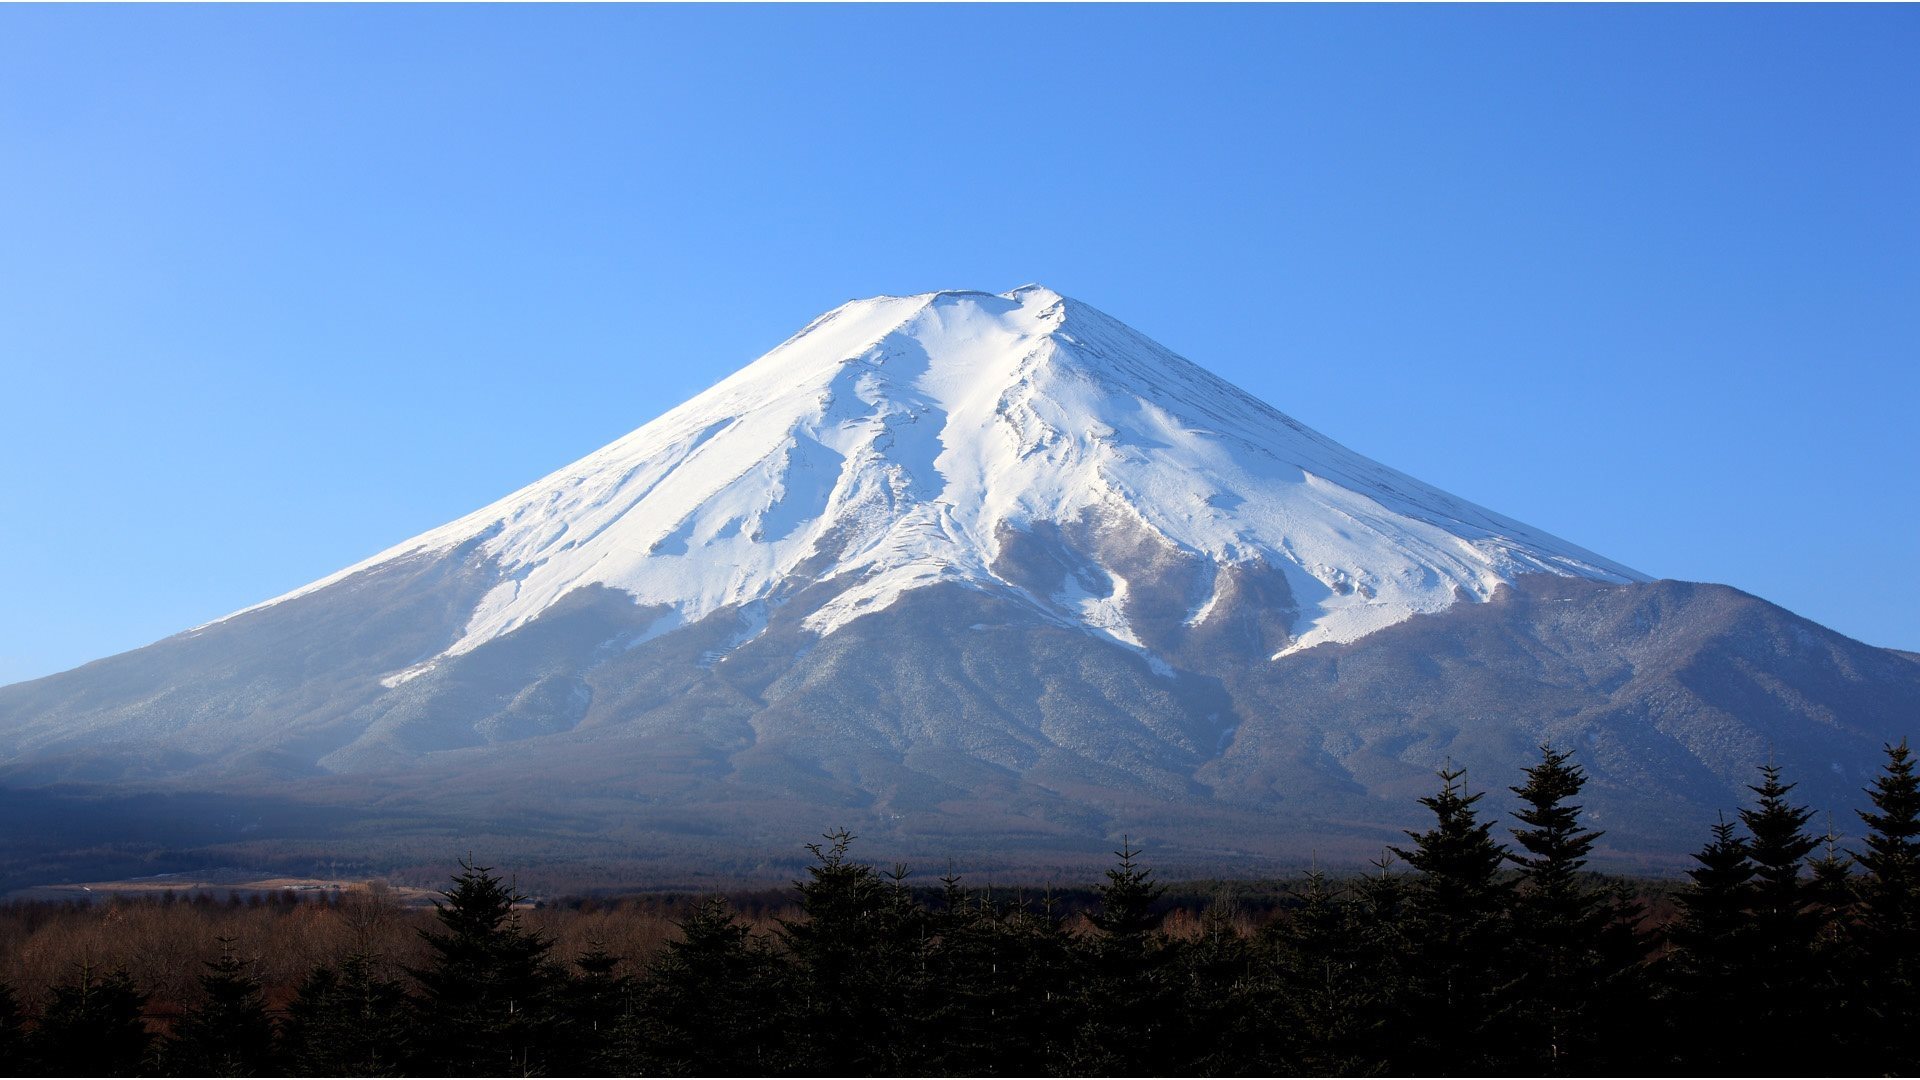 下載壁紙上 富士山参加比赛 雪 富士山 日本顯示器 分辨率1920x1080 在桌面上的圖像